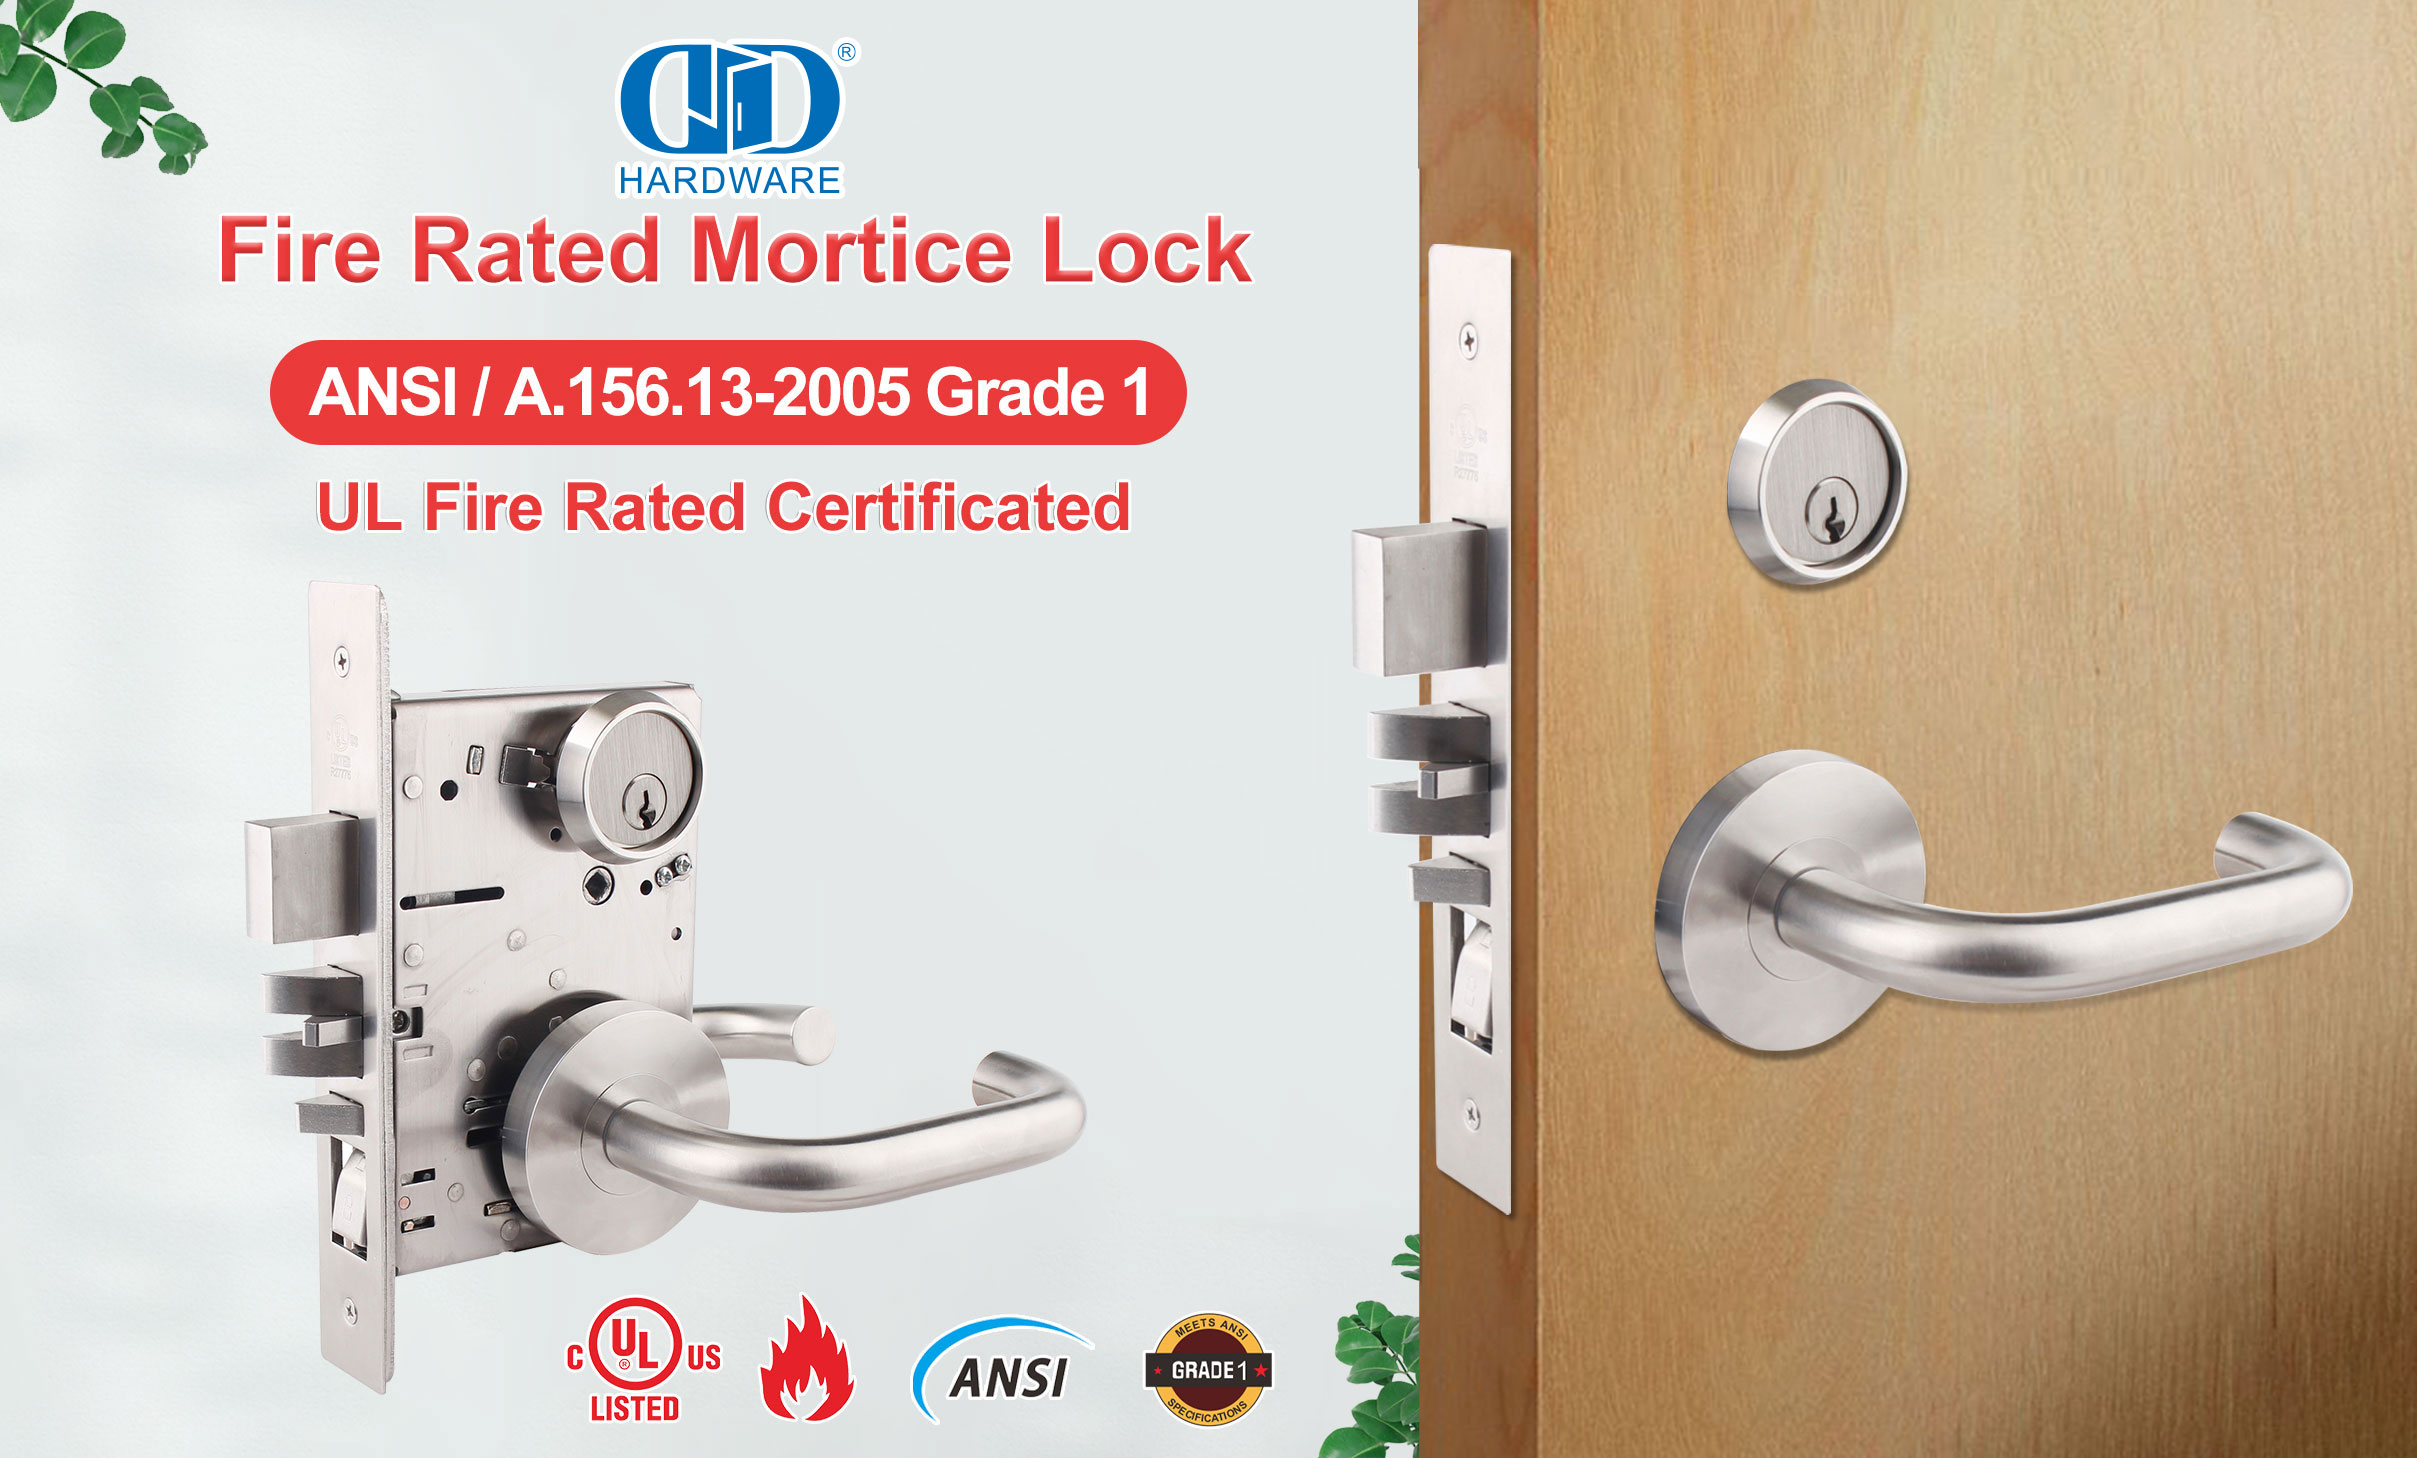 Graad 1 Mortice Lock, voldoen aan ANSI-standaarde